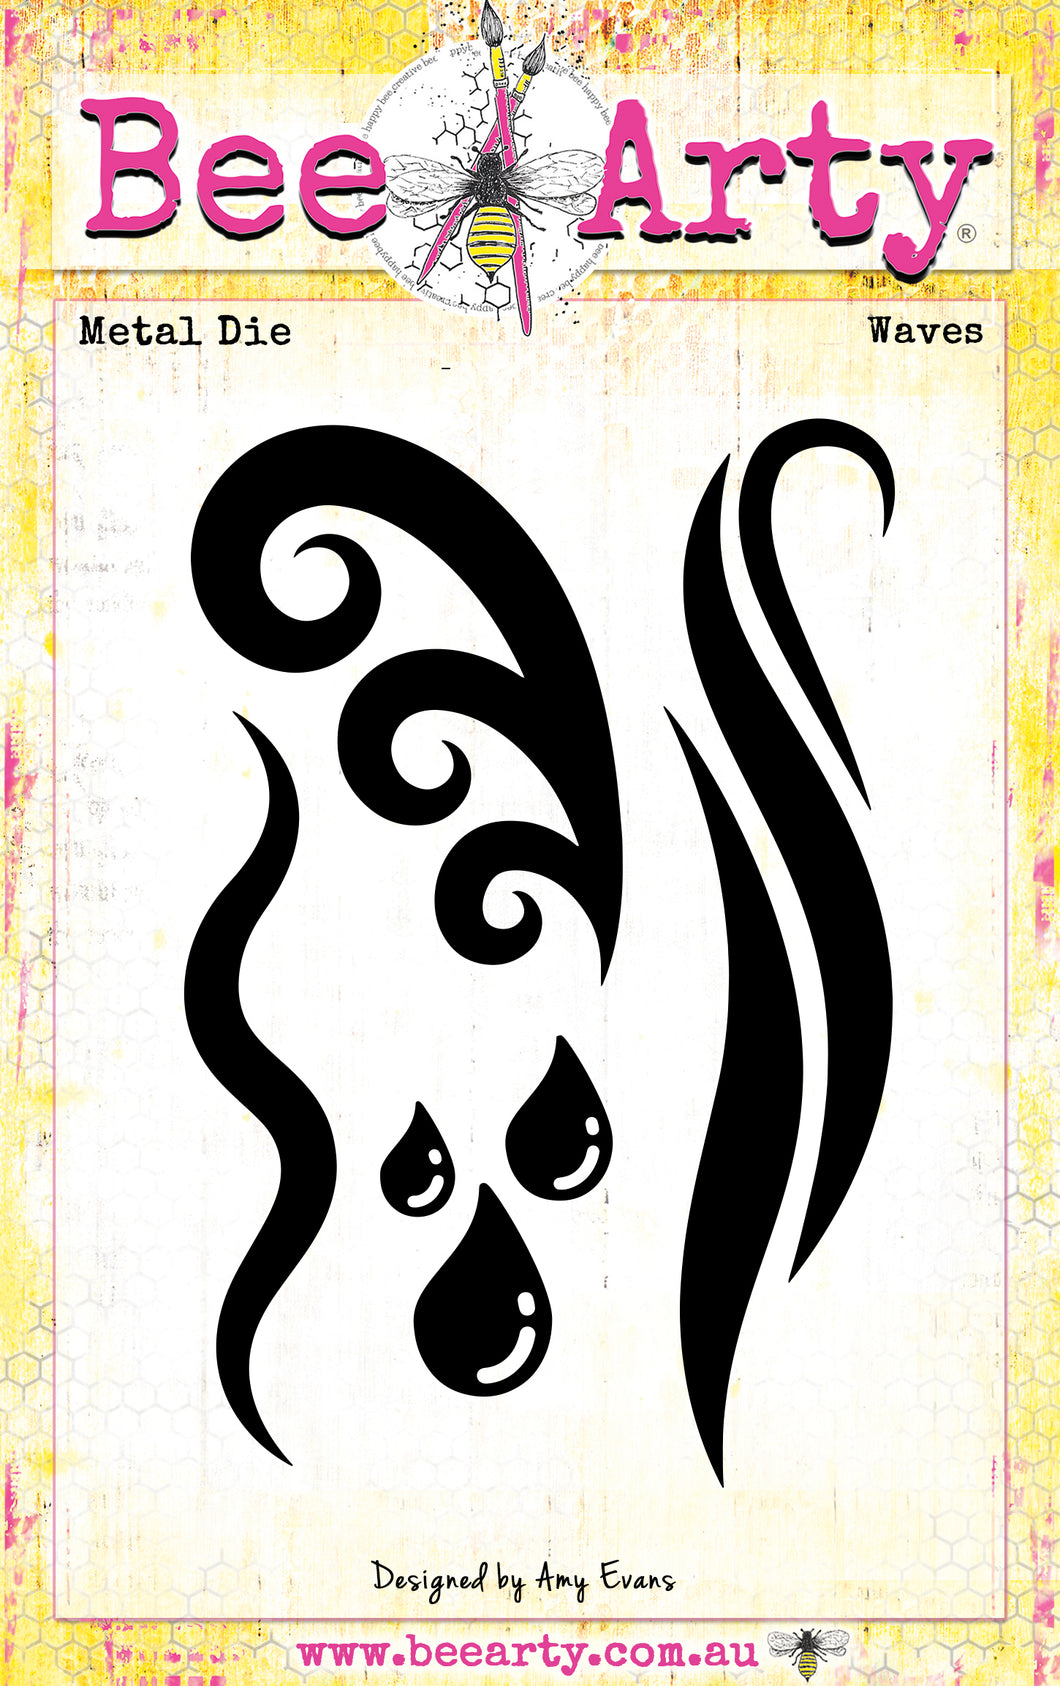 Waves - Metal Die